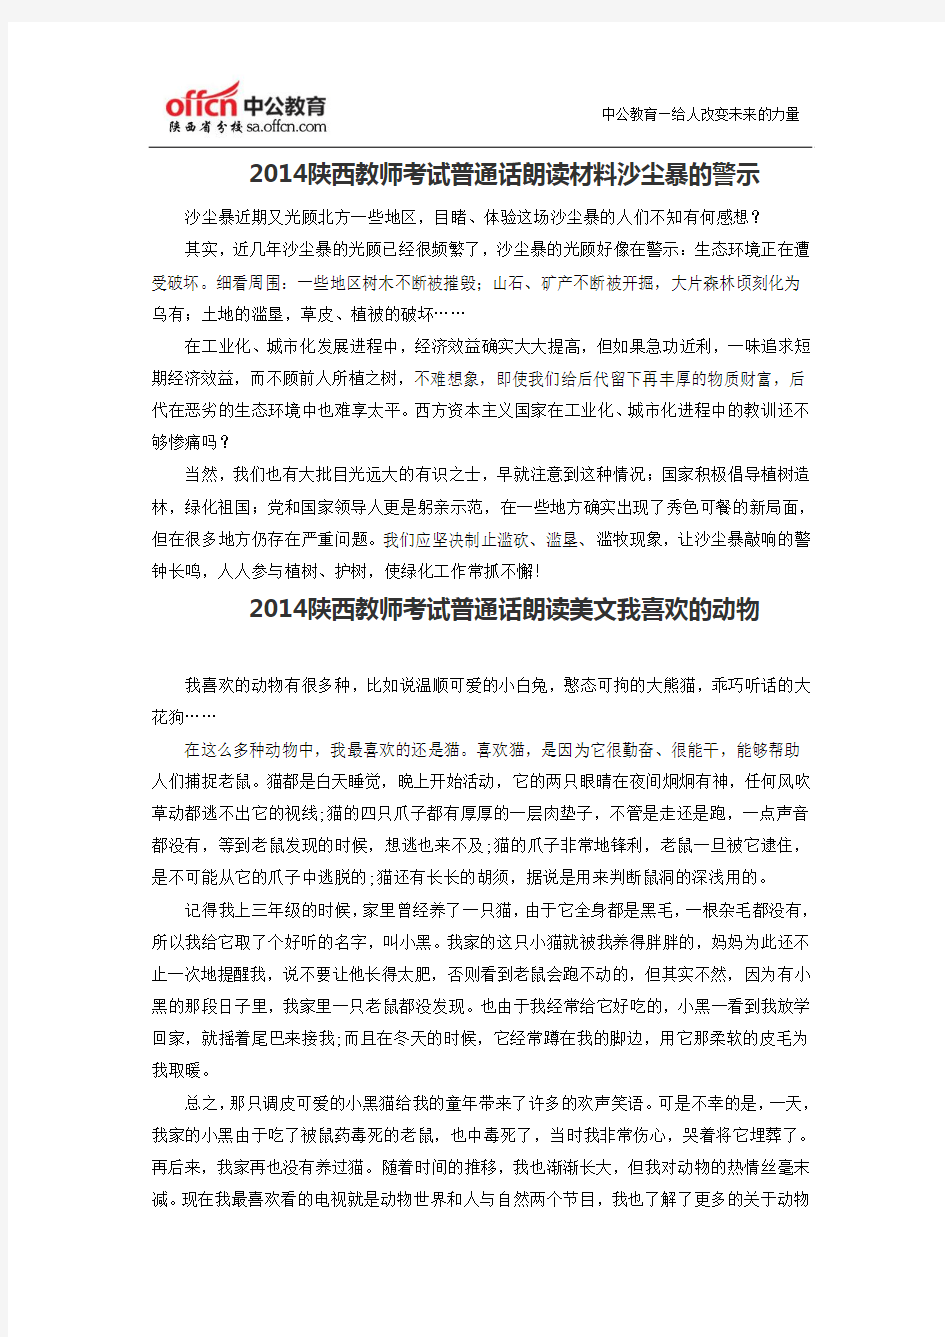 2014陕西教师考试普通话朗读材料沙尘暴的警示